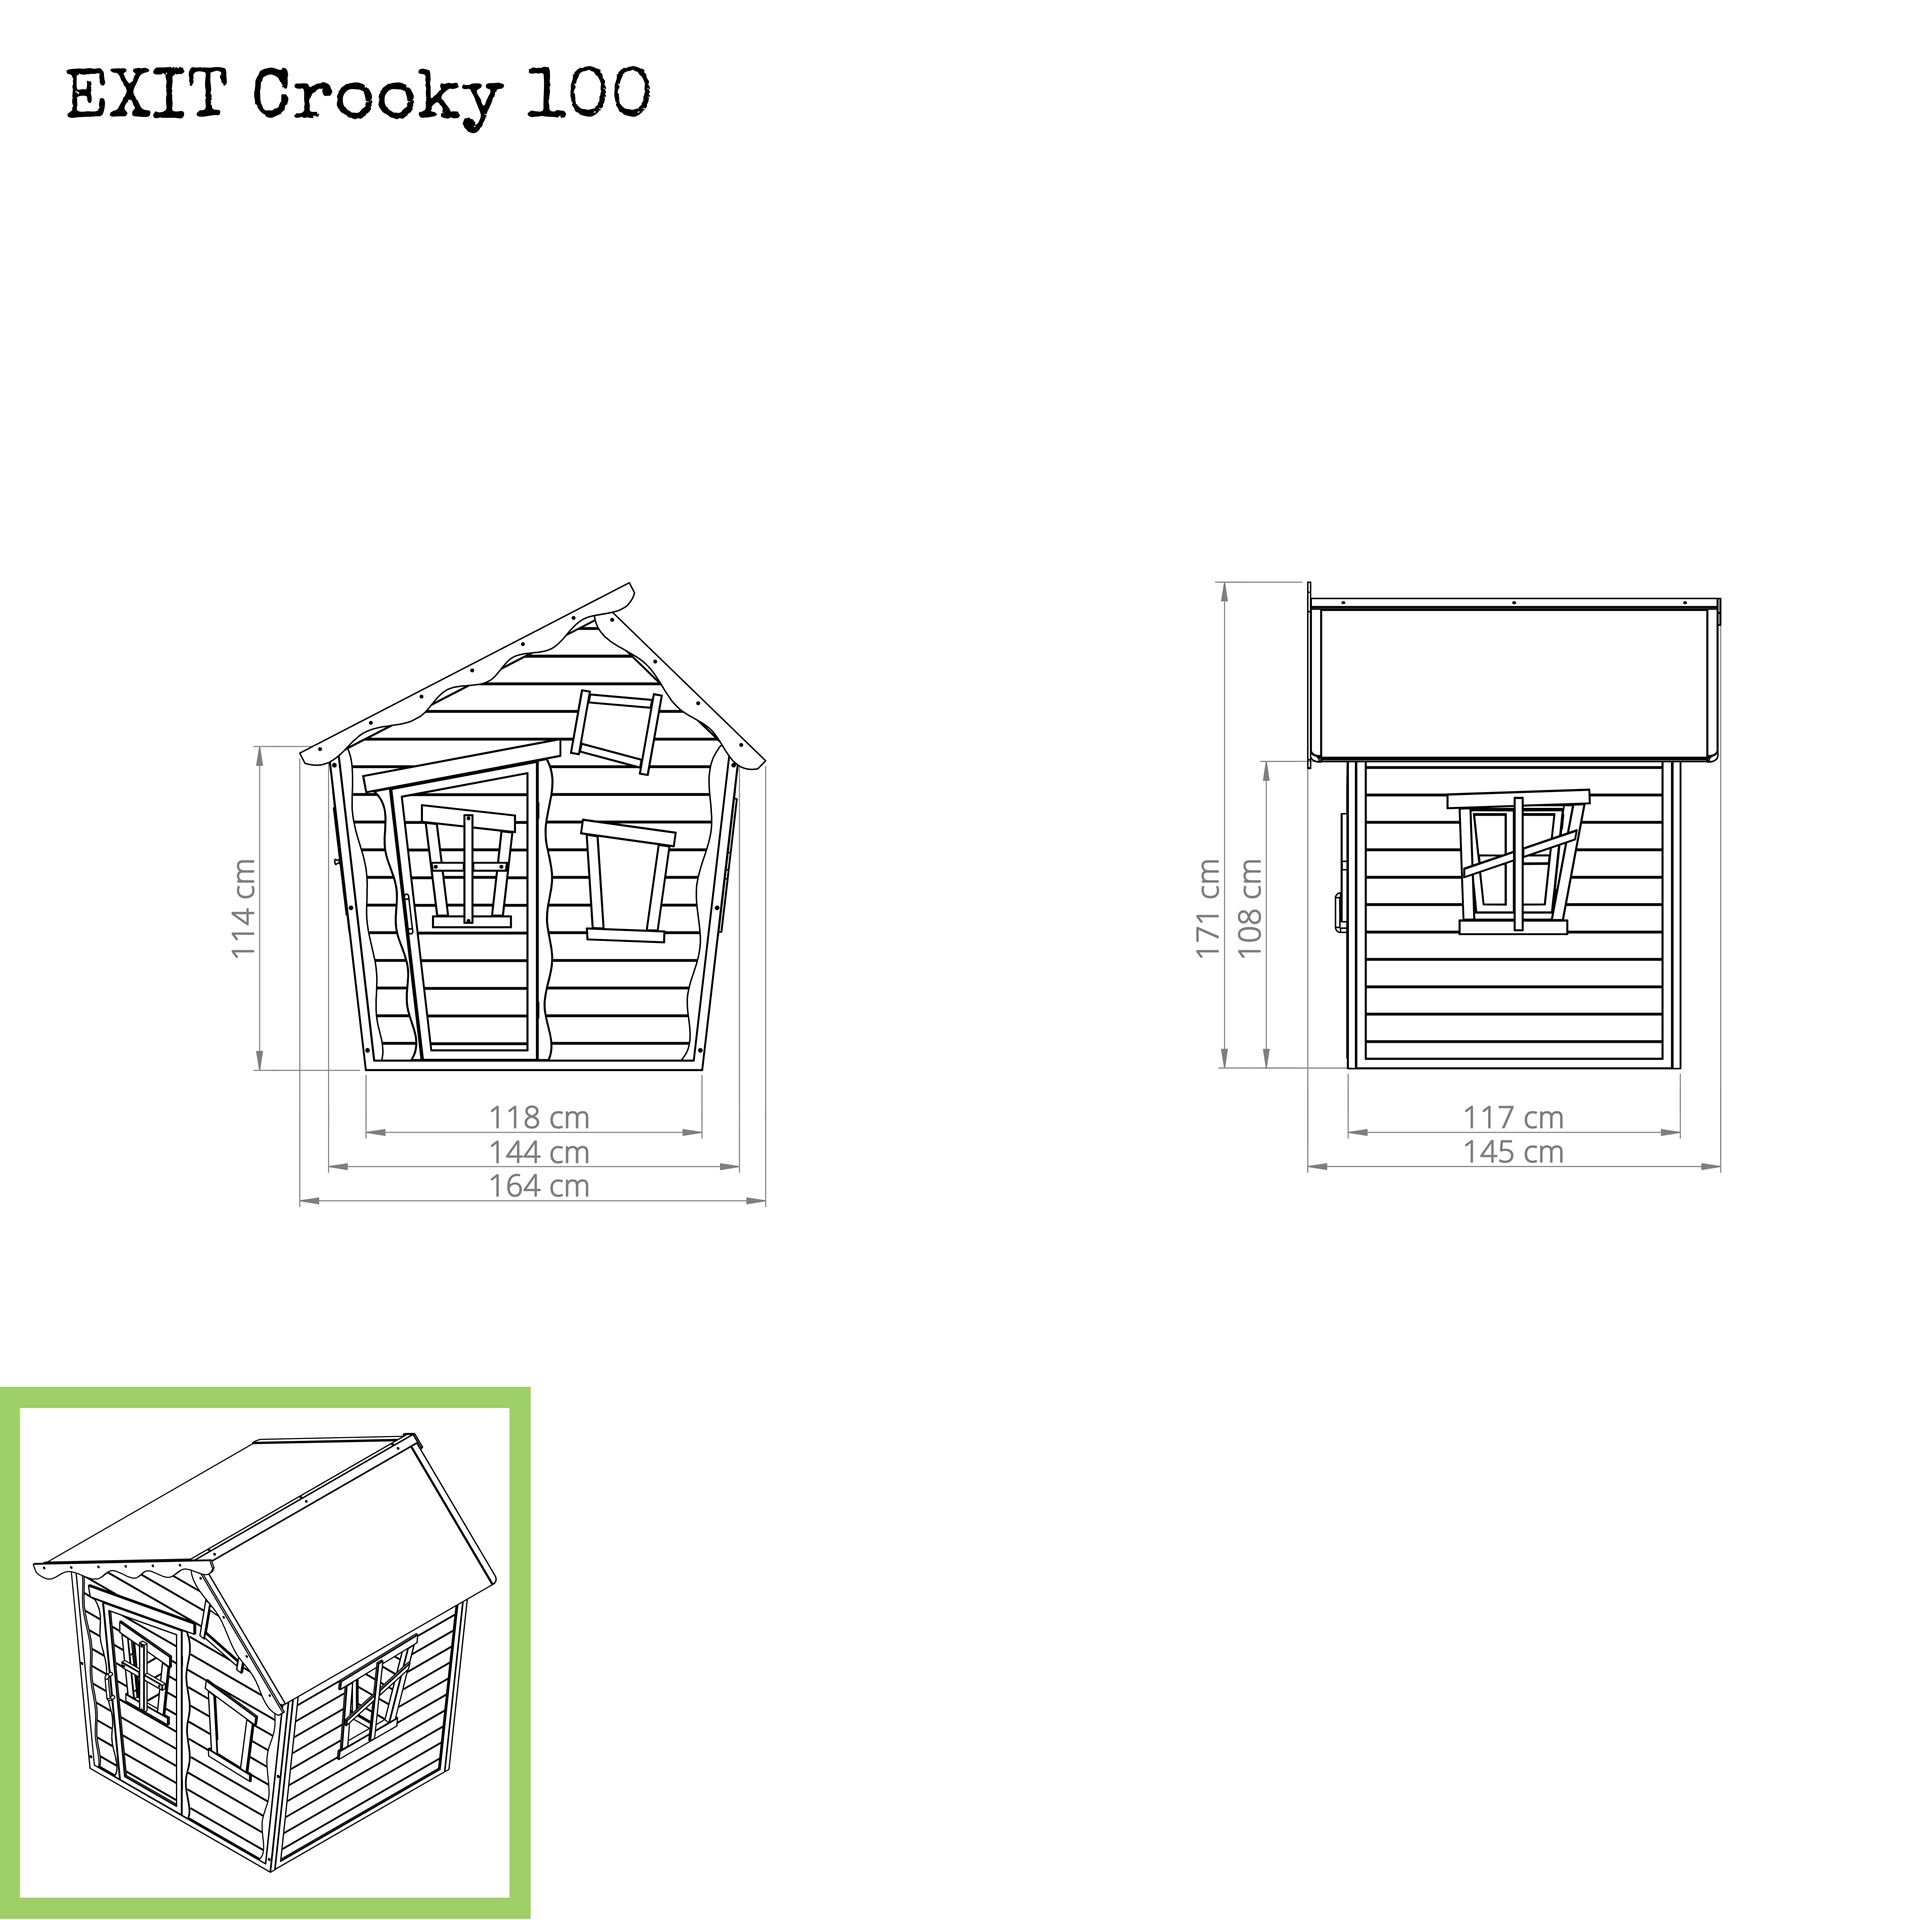 EXIT-Crooky-100-houten-speelhuis-grijsbeige